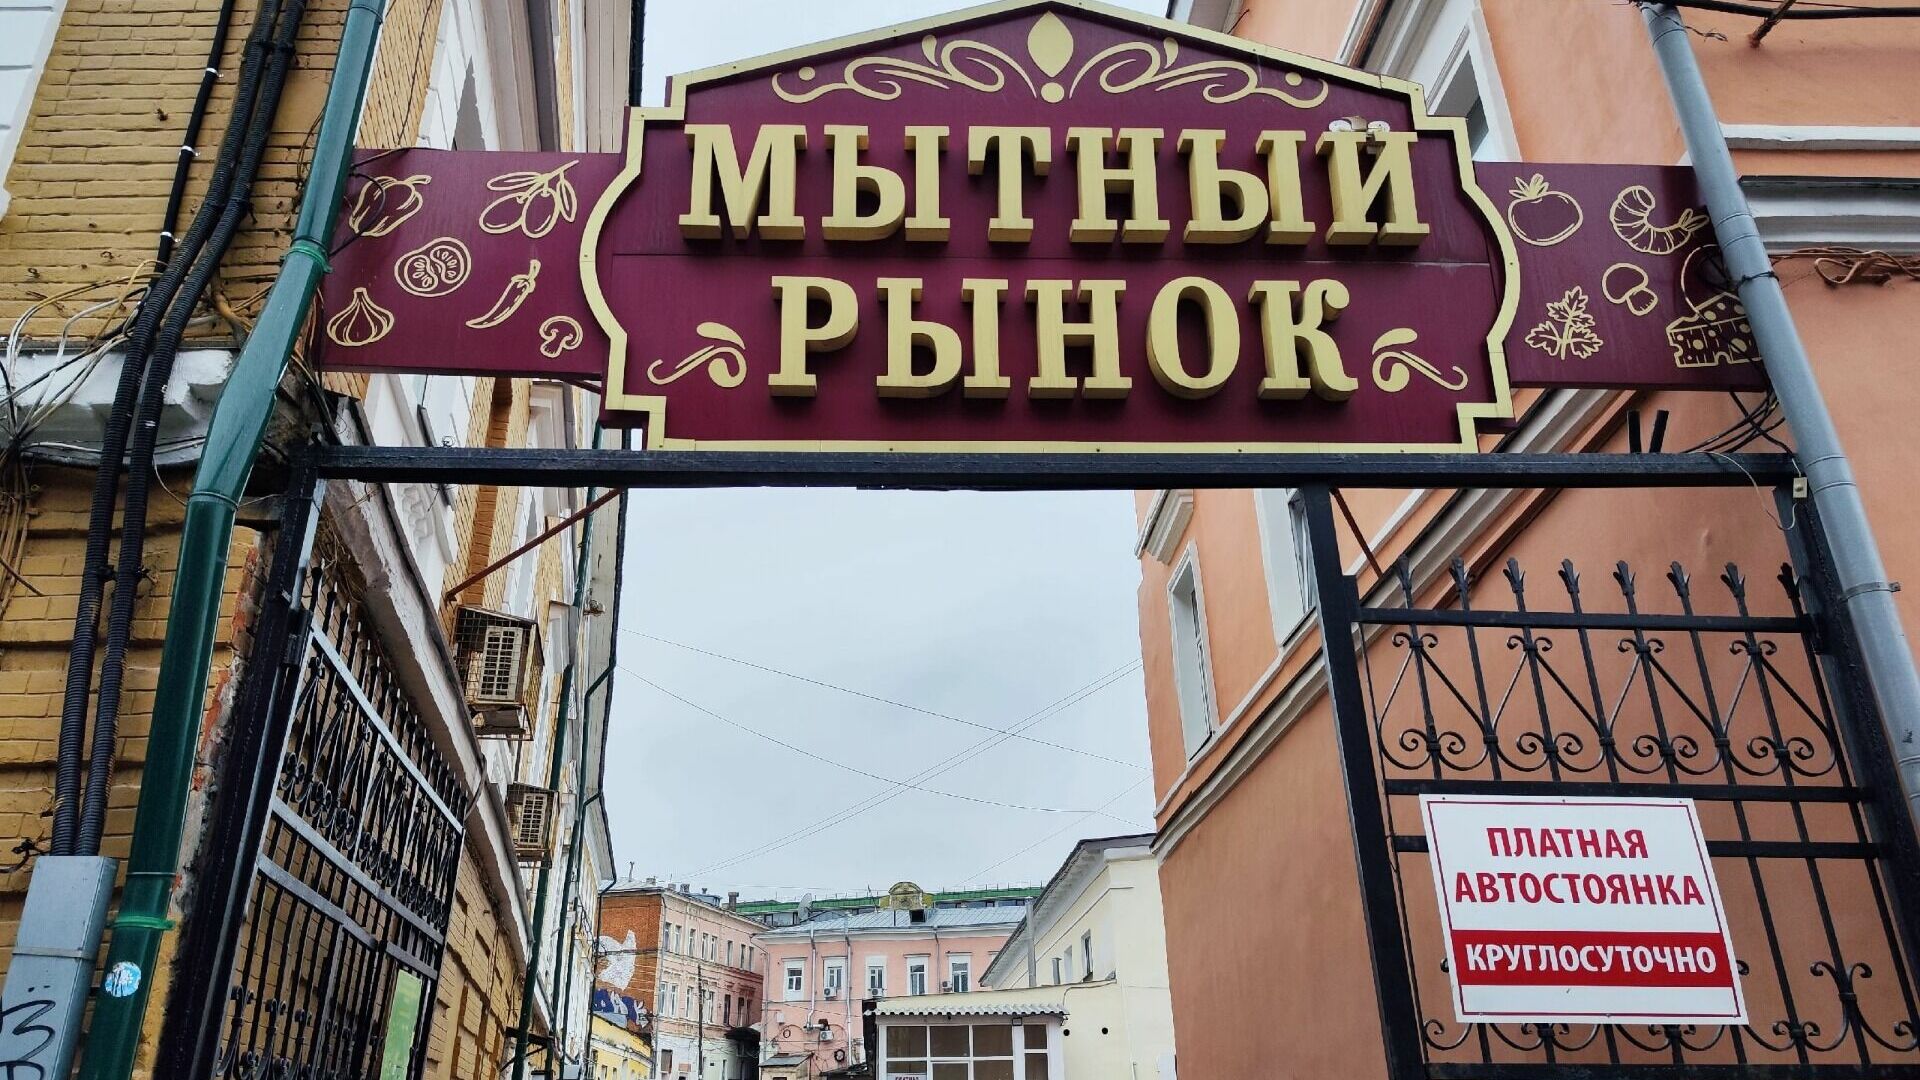 Мытный рынок передумали продавать в Нижнем Новгороде